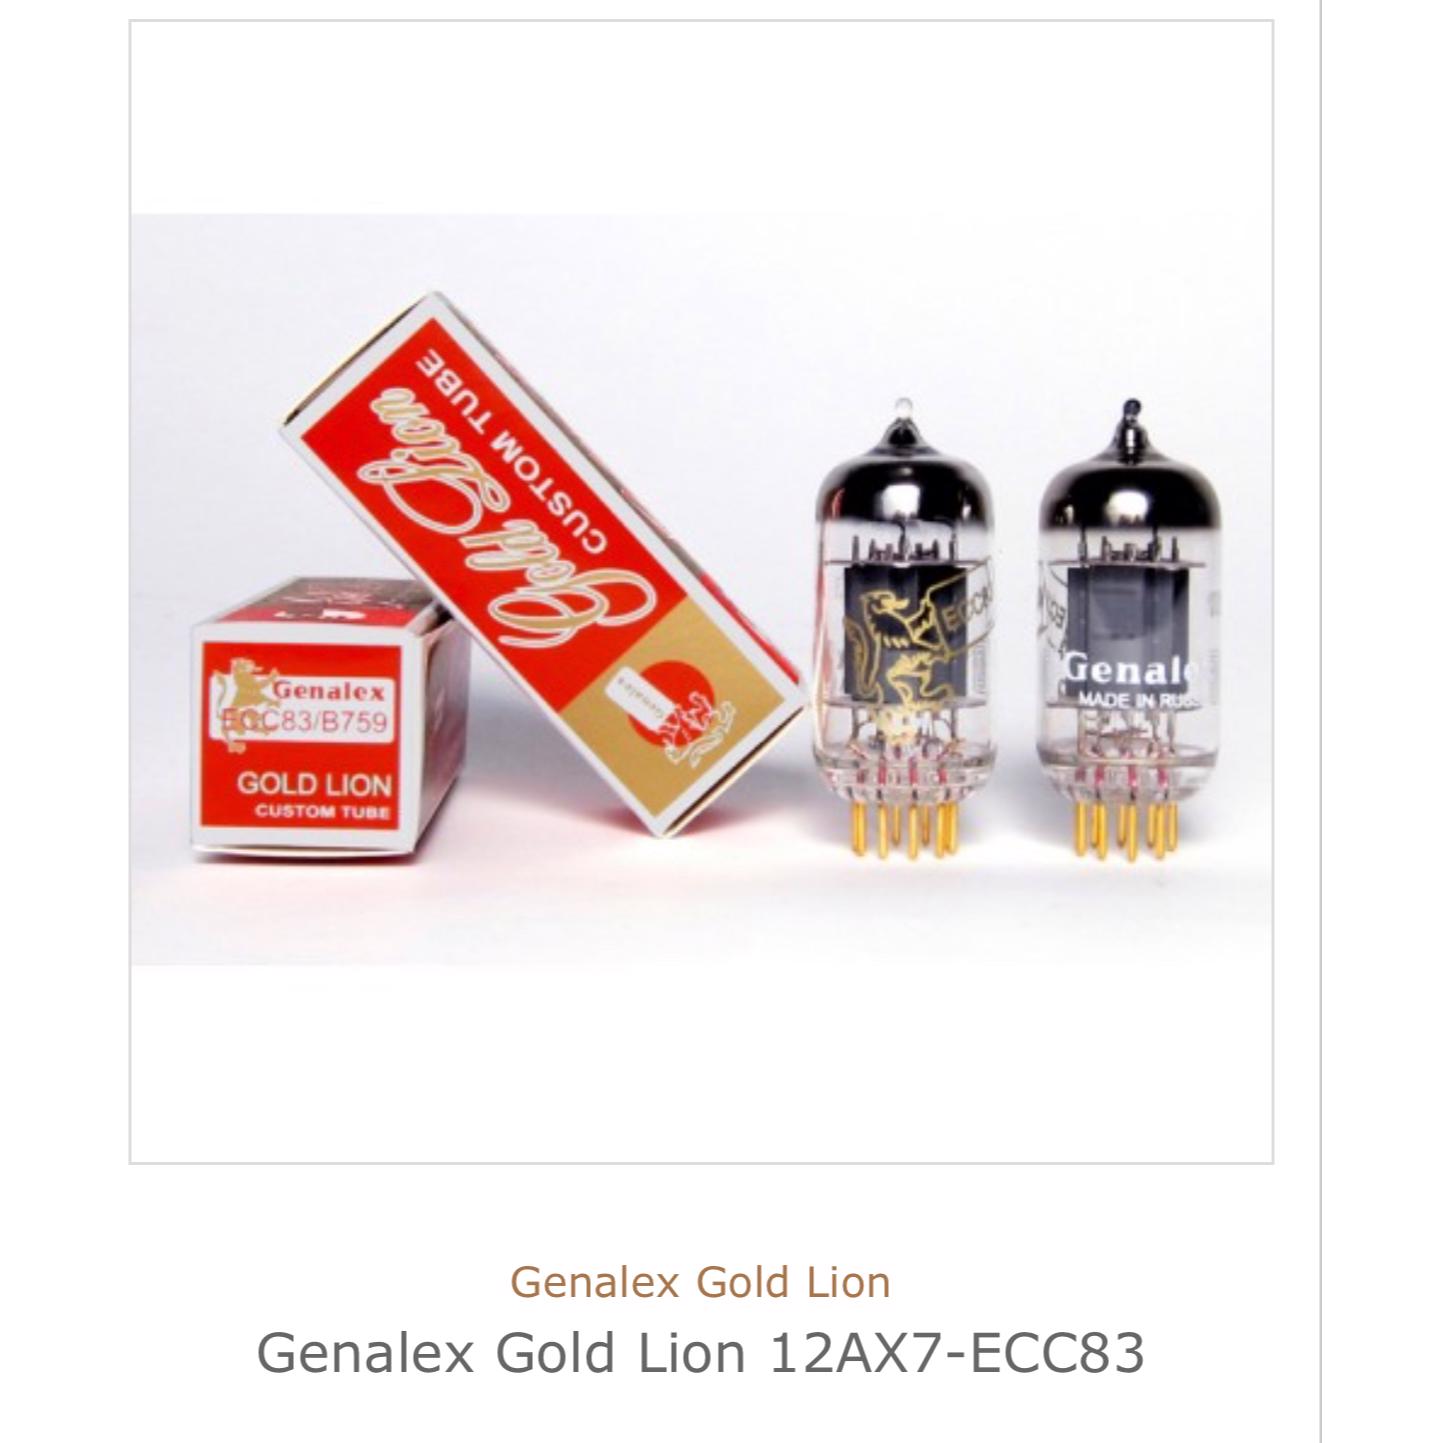 Genalex gold lion 12ax7- ecc83